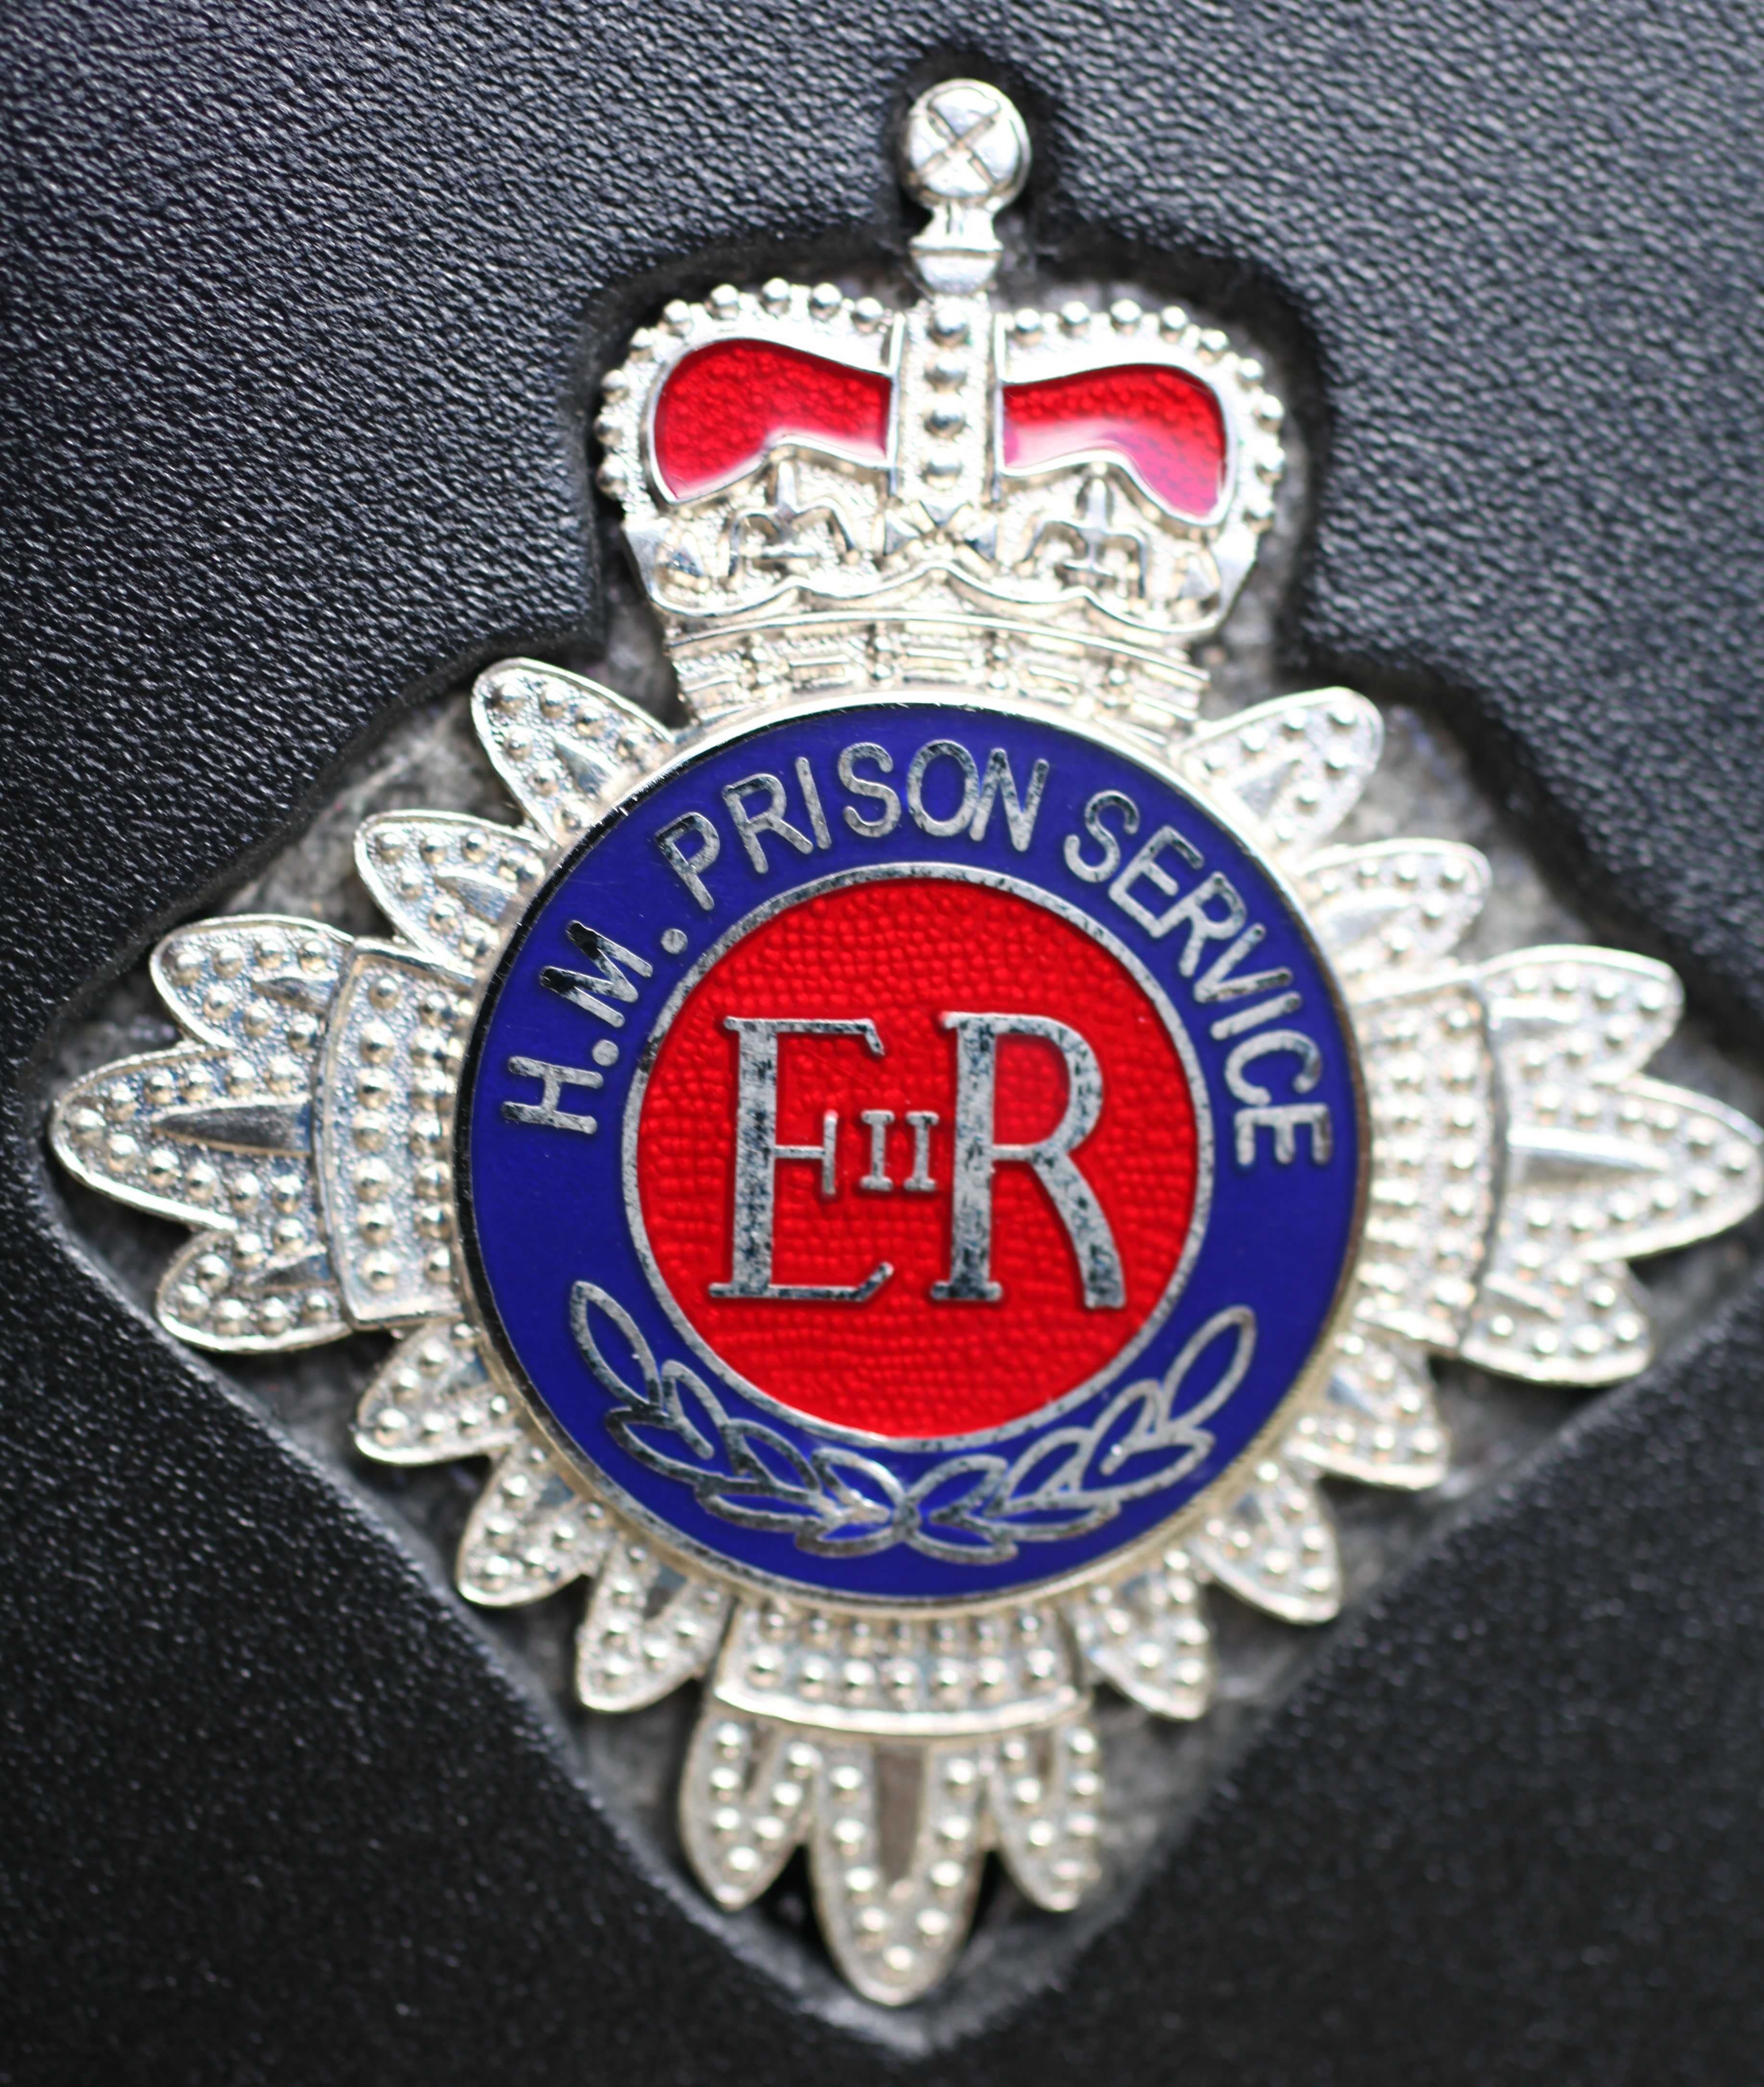 Okładka na ID funkcjonariusza Wielkiej Brytanii Służba Więzienna